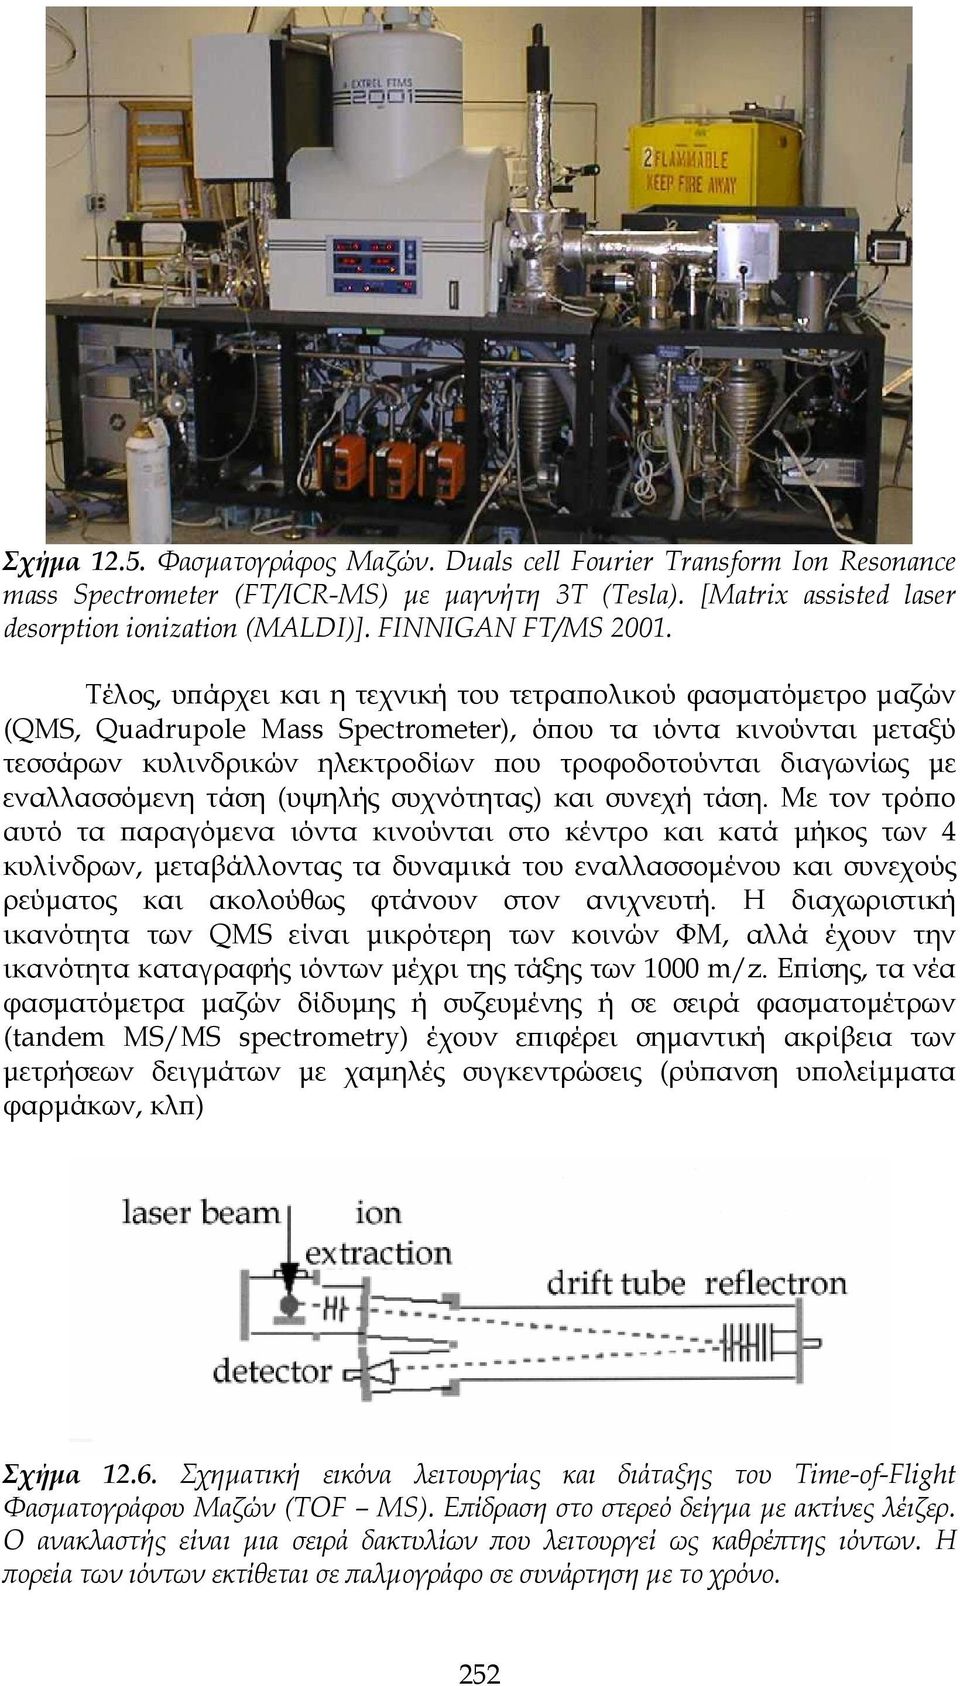 Τέλος, υπάρχει και η τεχνική του τετραπολικού φασματόμετρο μαζών (QMS, Quadrupole Mass Spectrometer), όπου τα ιόντα κινούνται μεταξύ τεσσάρων κυλινδρικών ηλεκτροδίων που τροφοδοτούνται διαγωνίως με